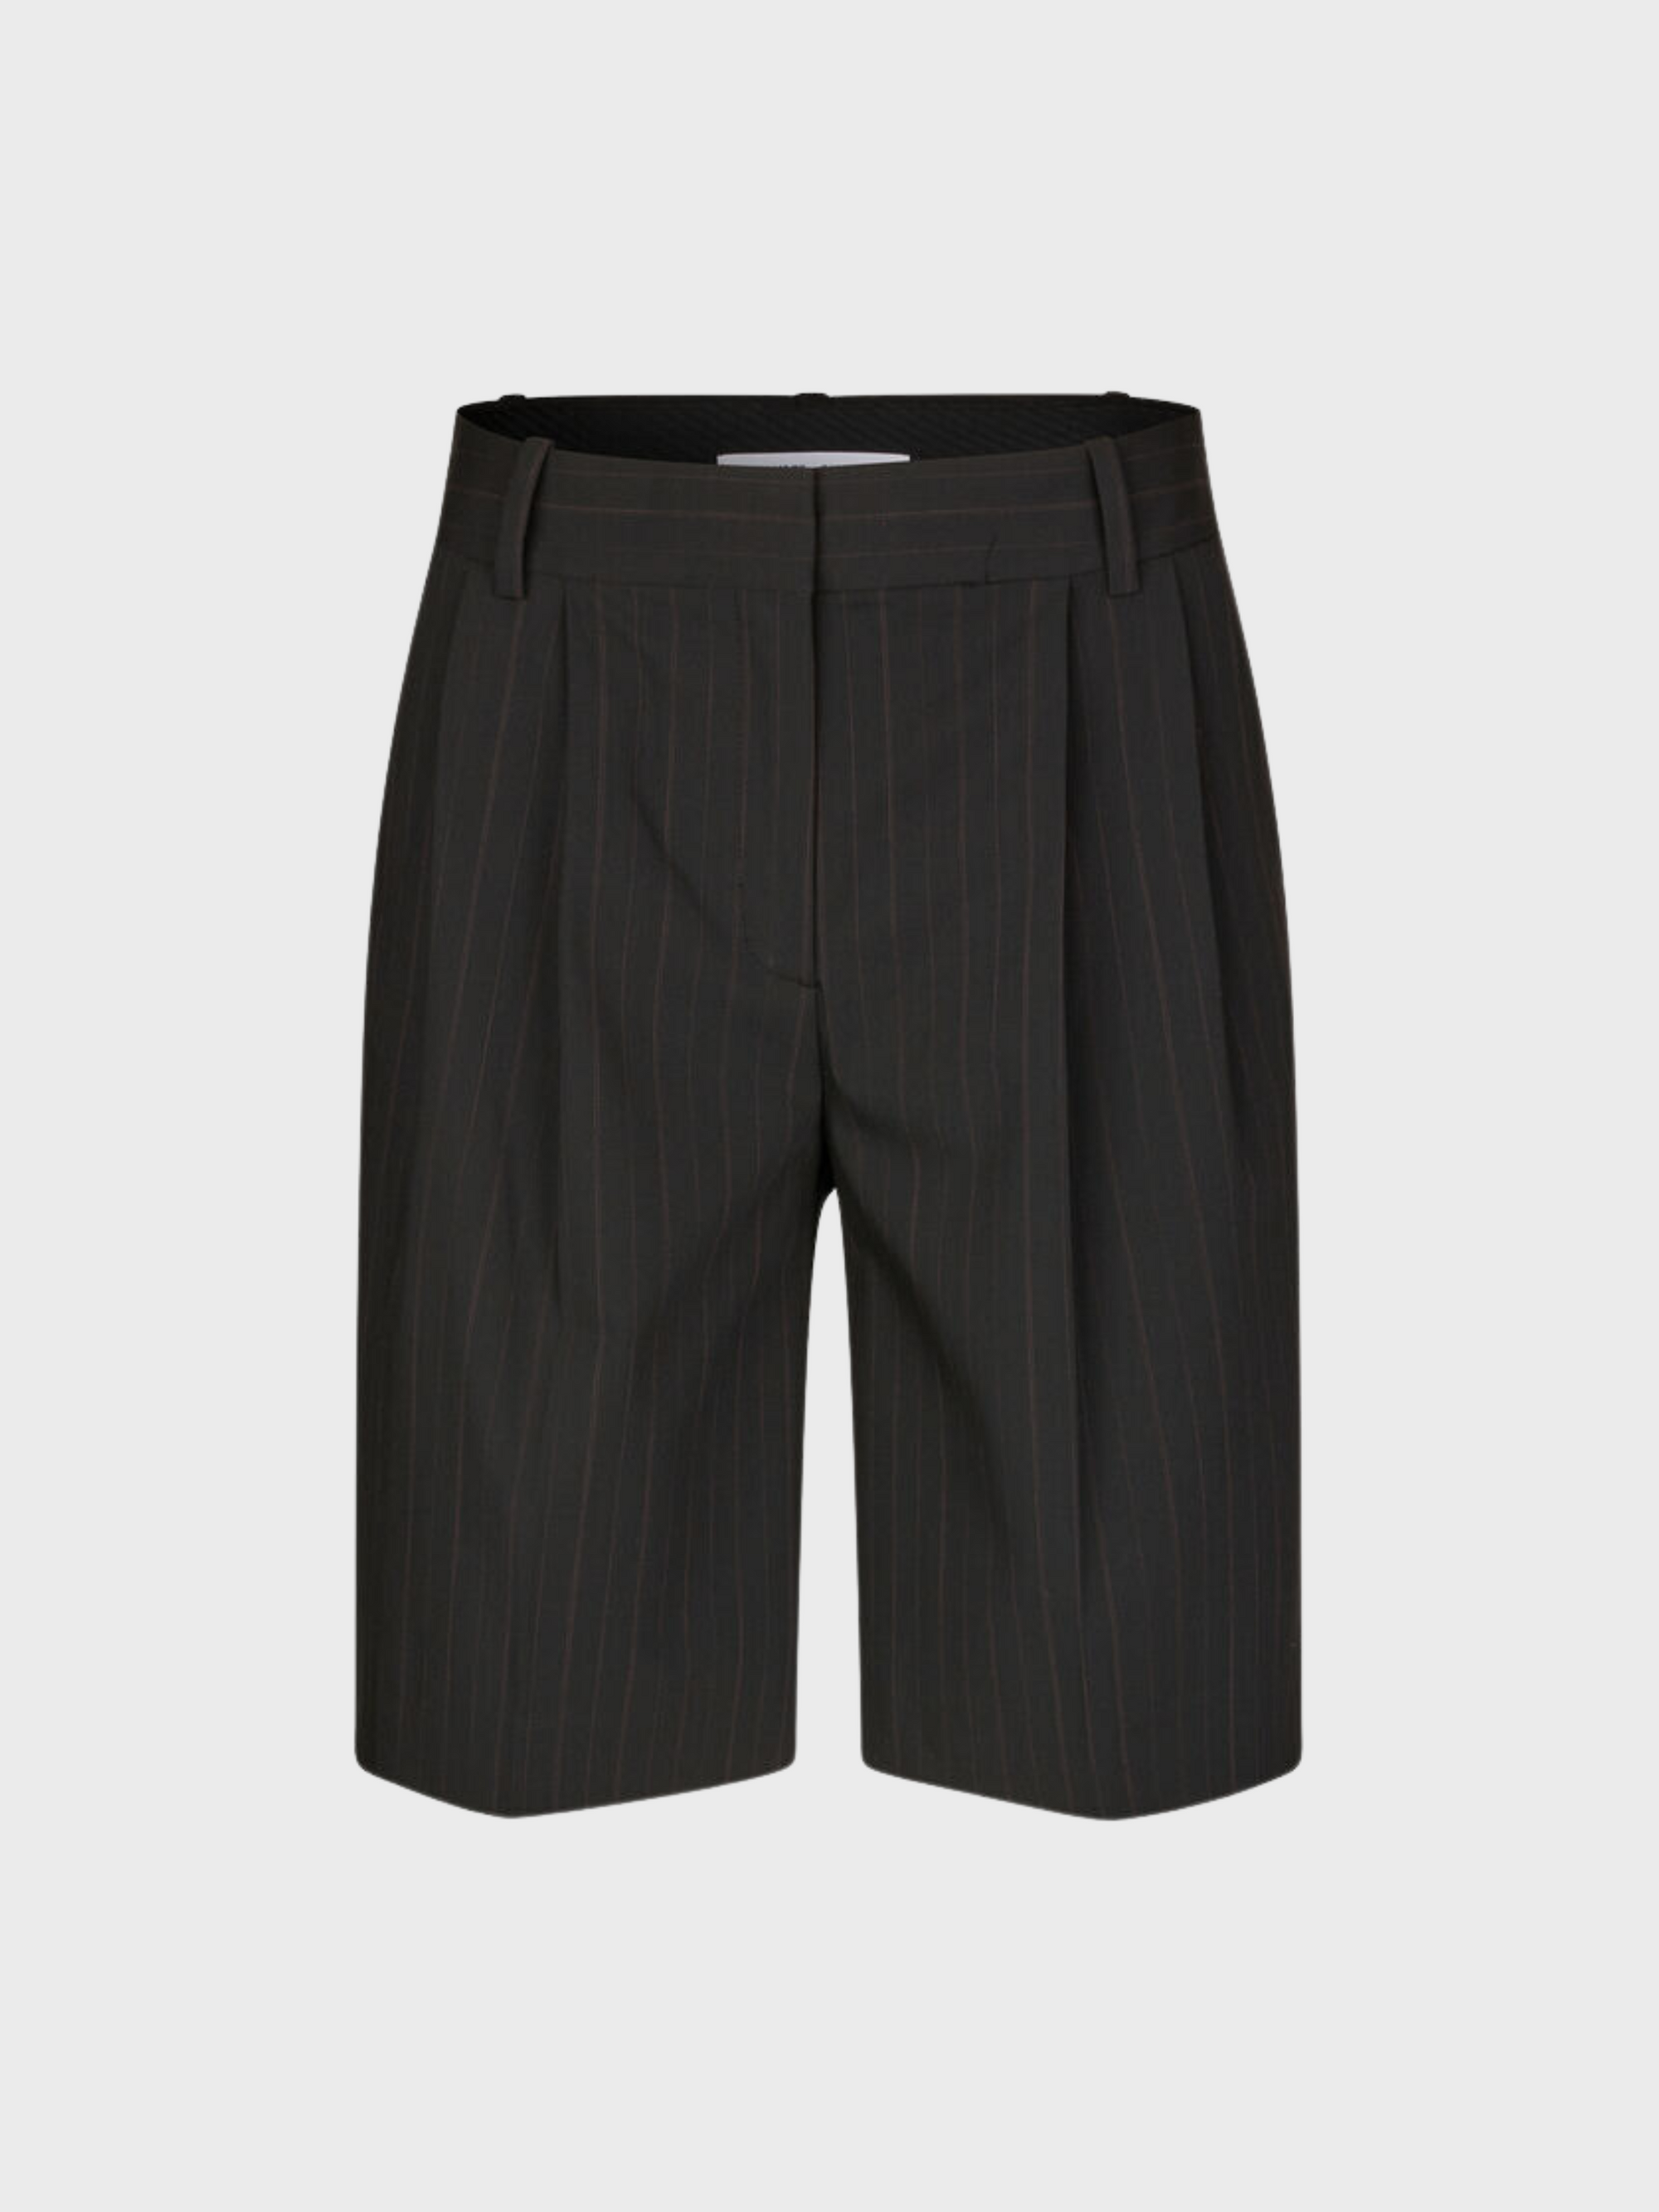 Samsoe Sahaveny Shorts Black Pinstripe-Shorts-West of Woodward Boutique-Vancouver-Canada